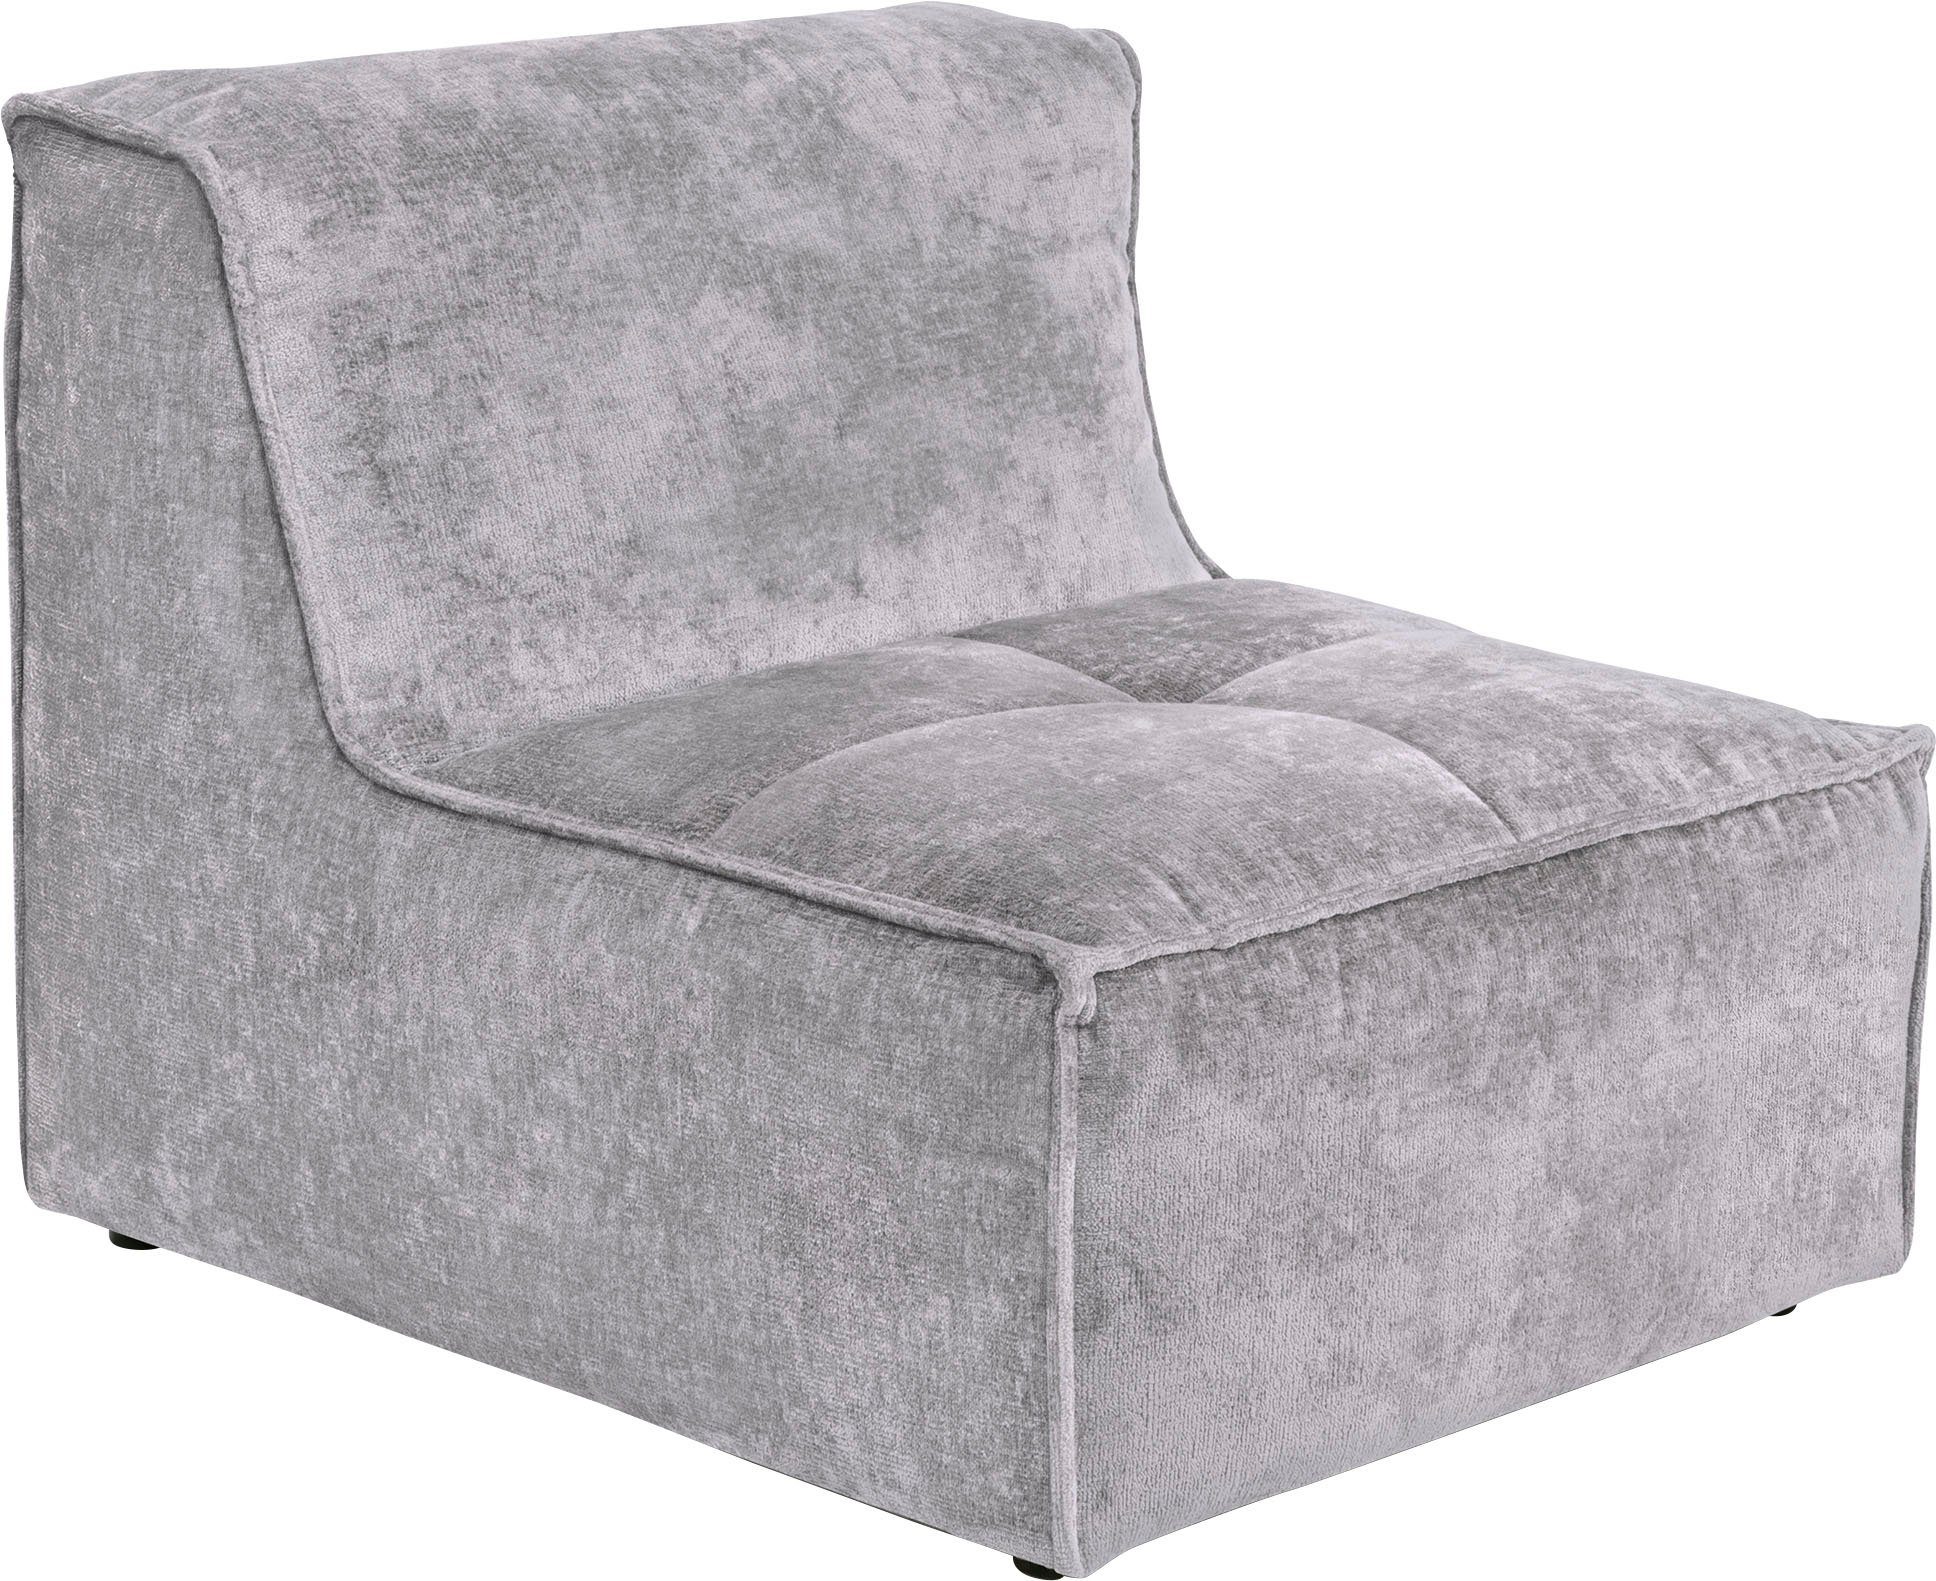 Monolid individuelle Modul Sofa-Mittelelement hellgrau als oder für separat St), verwendbar, (1 Zusammenstellung RAUM.ID